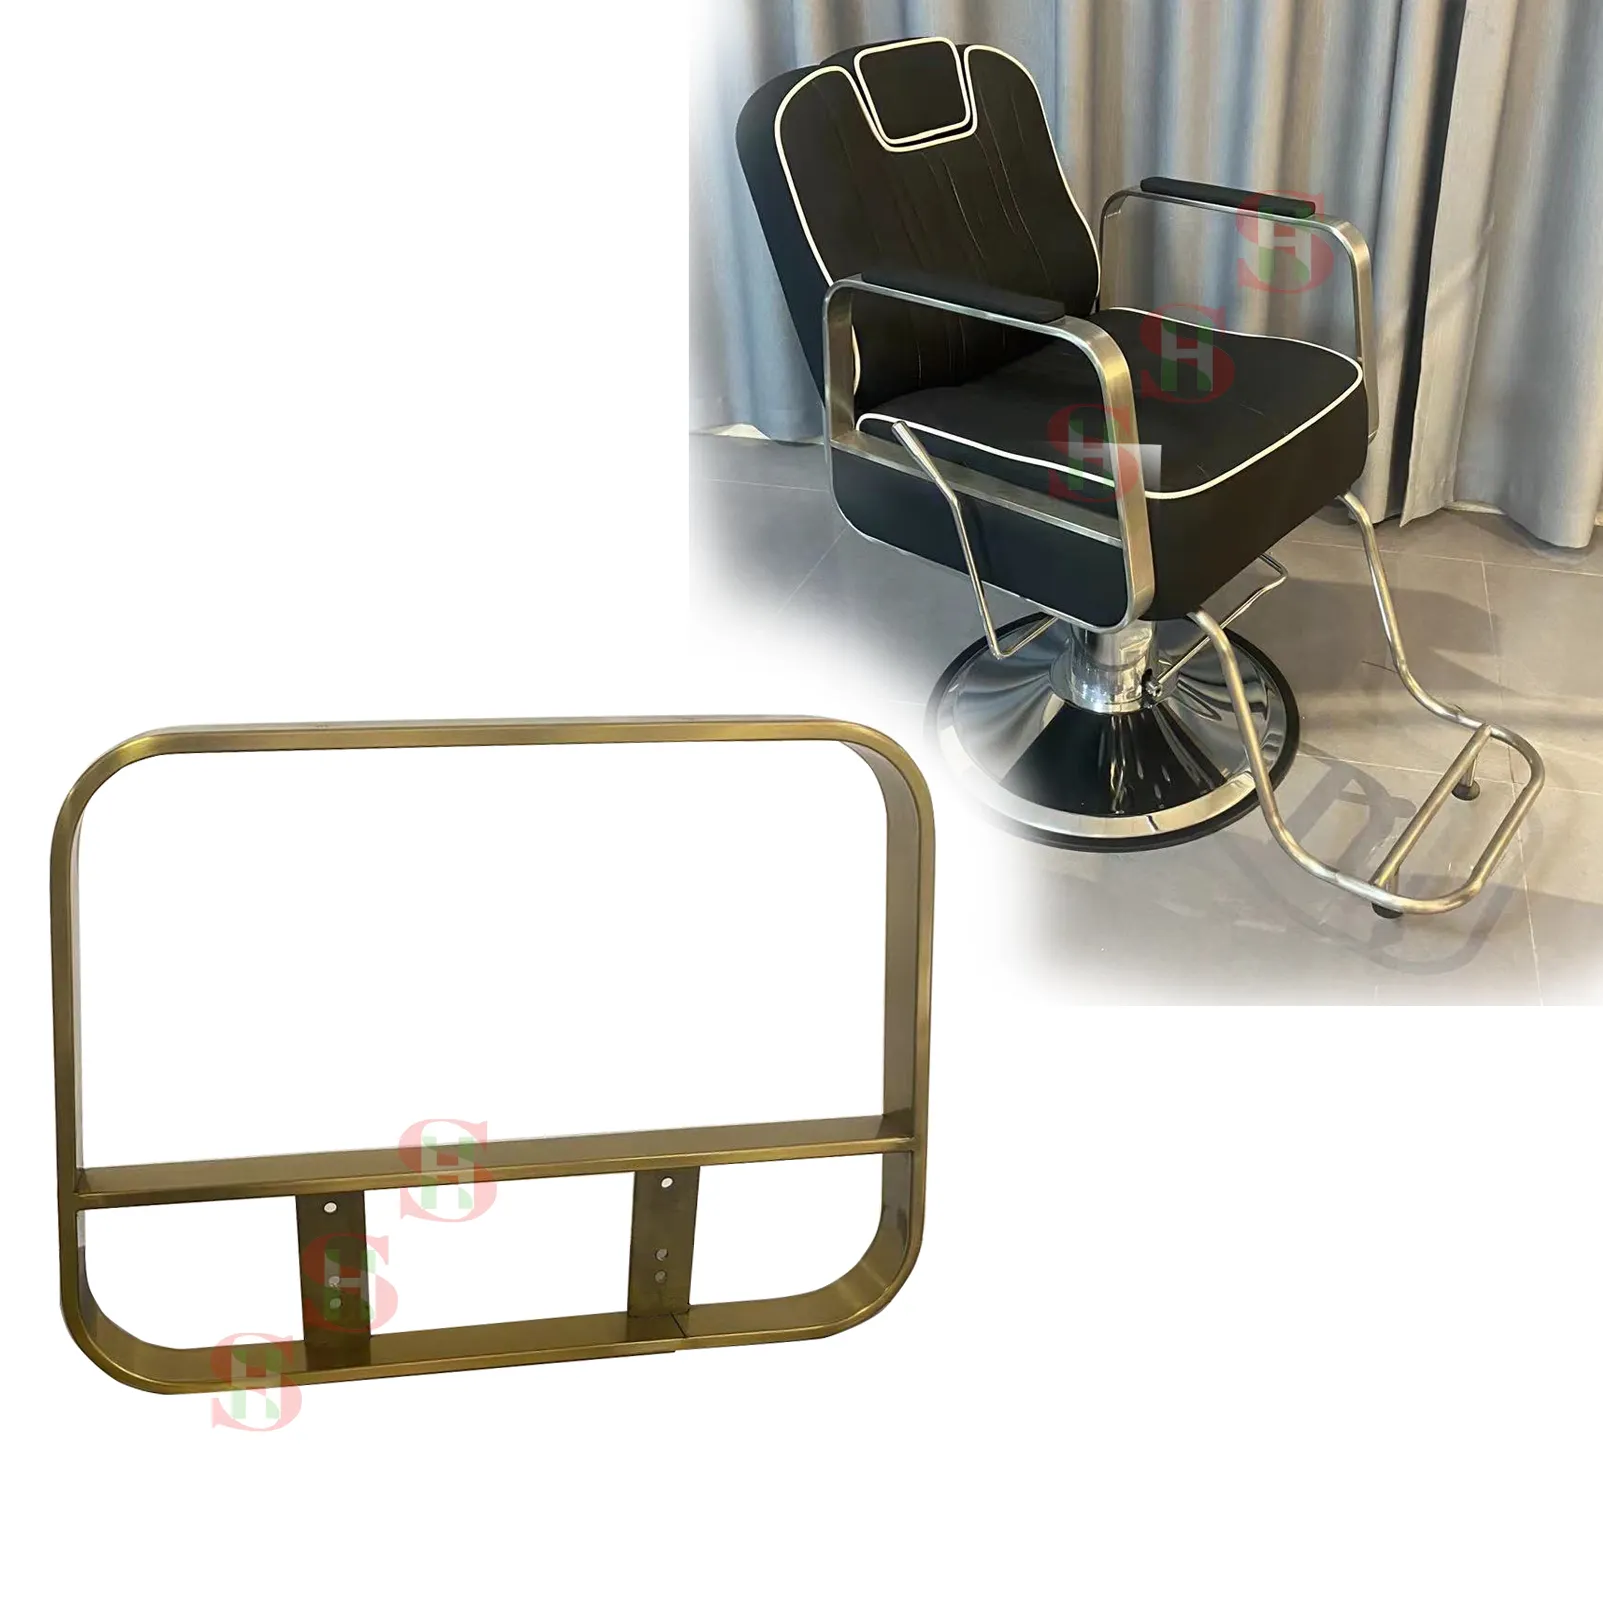 Commercio all'ingrosso salone mobile sedia universale bracciolo parti metalliche/accessori della sedia da barbiere